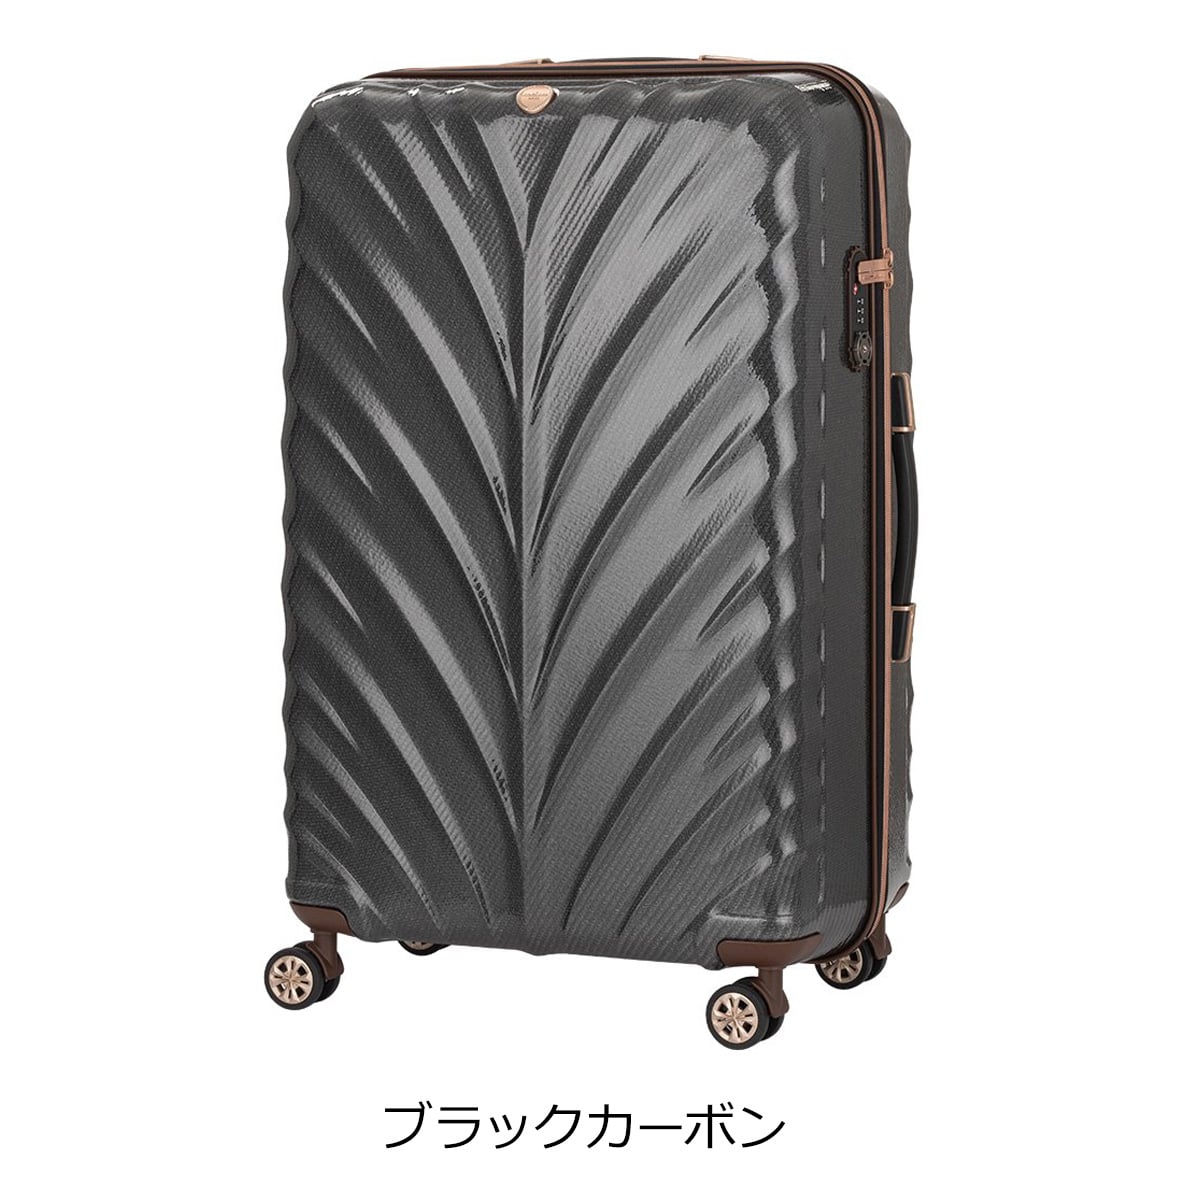 ネット買い LEGEND WALKER スーツケース 5507-70 ブラックカーボン